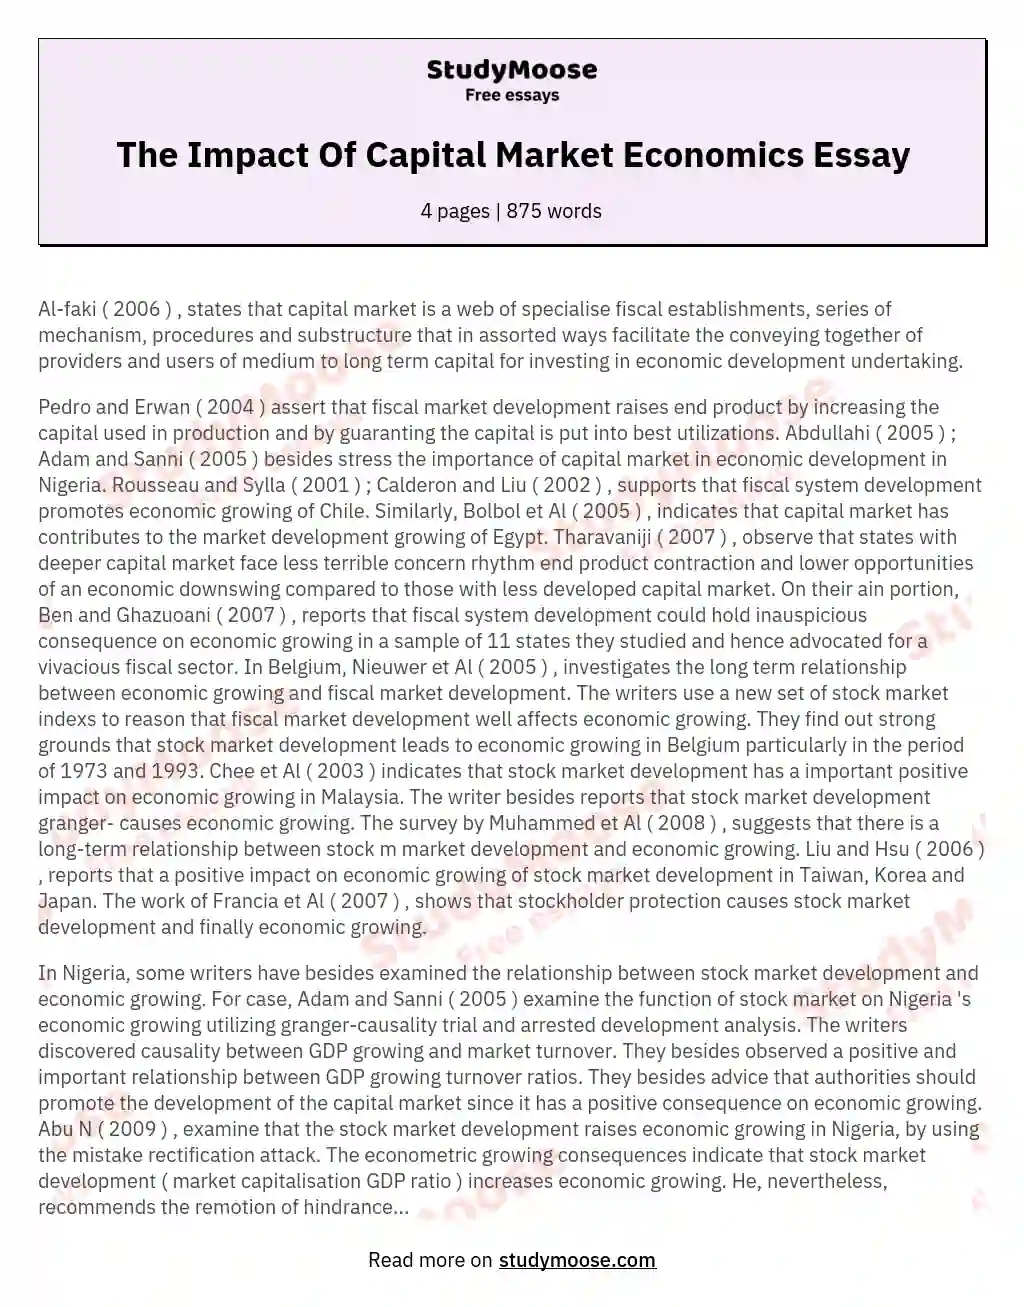 The Impact Of Capital Market Economics Essay essay